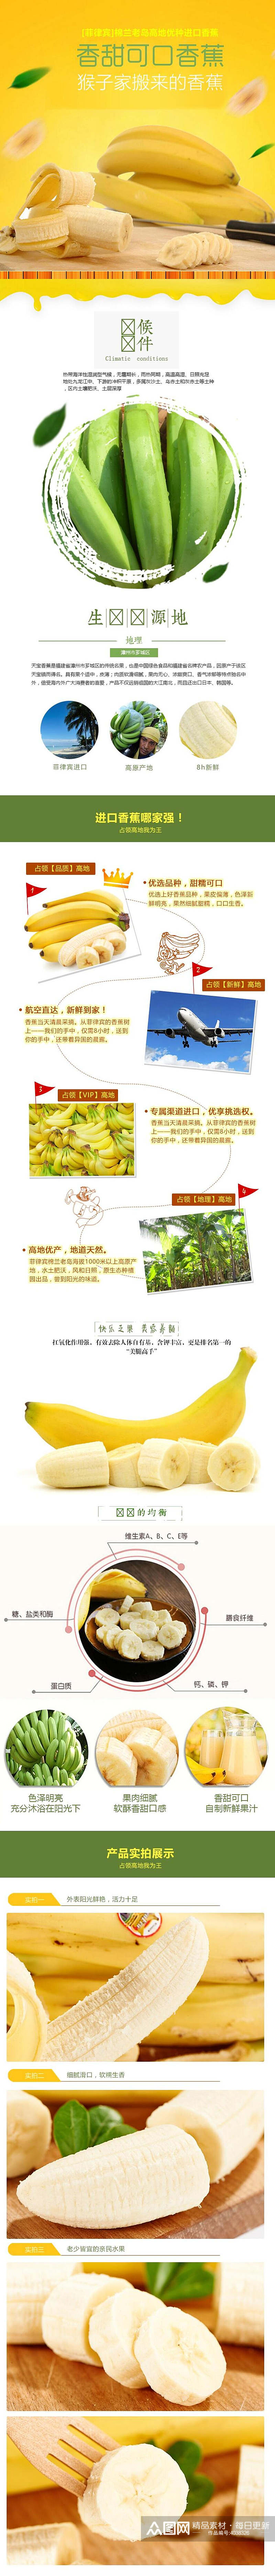 香甜可口香蕉水果电商详情页素材